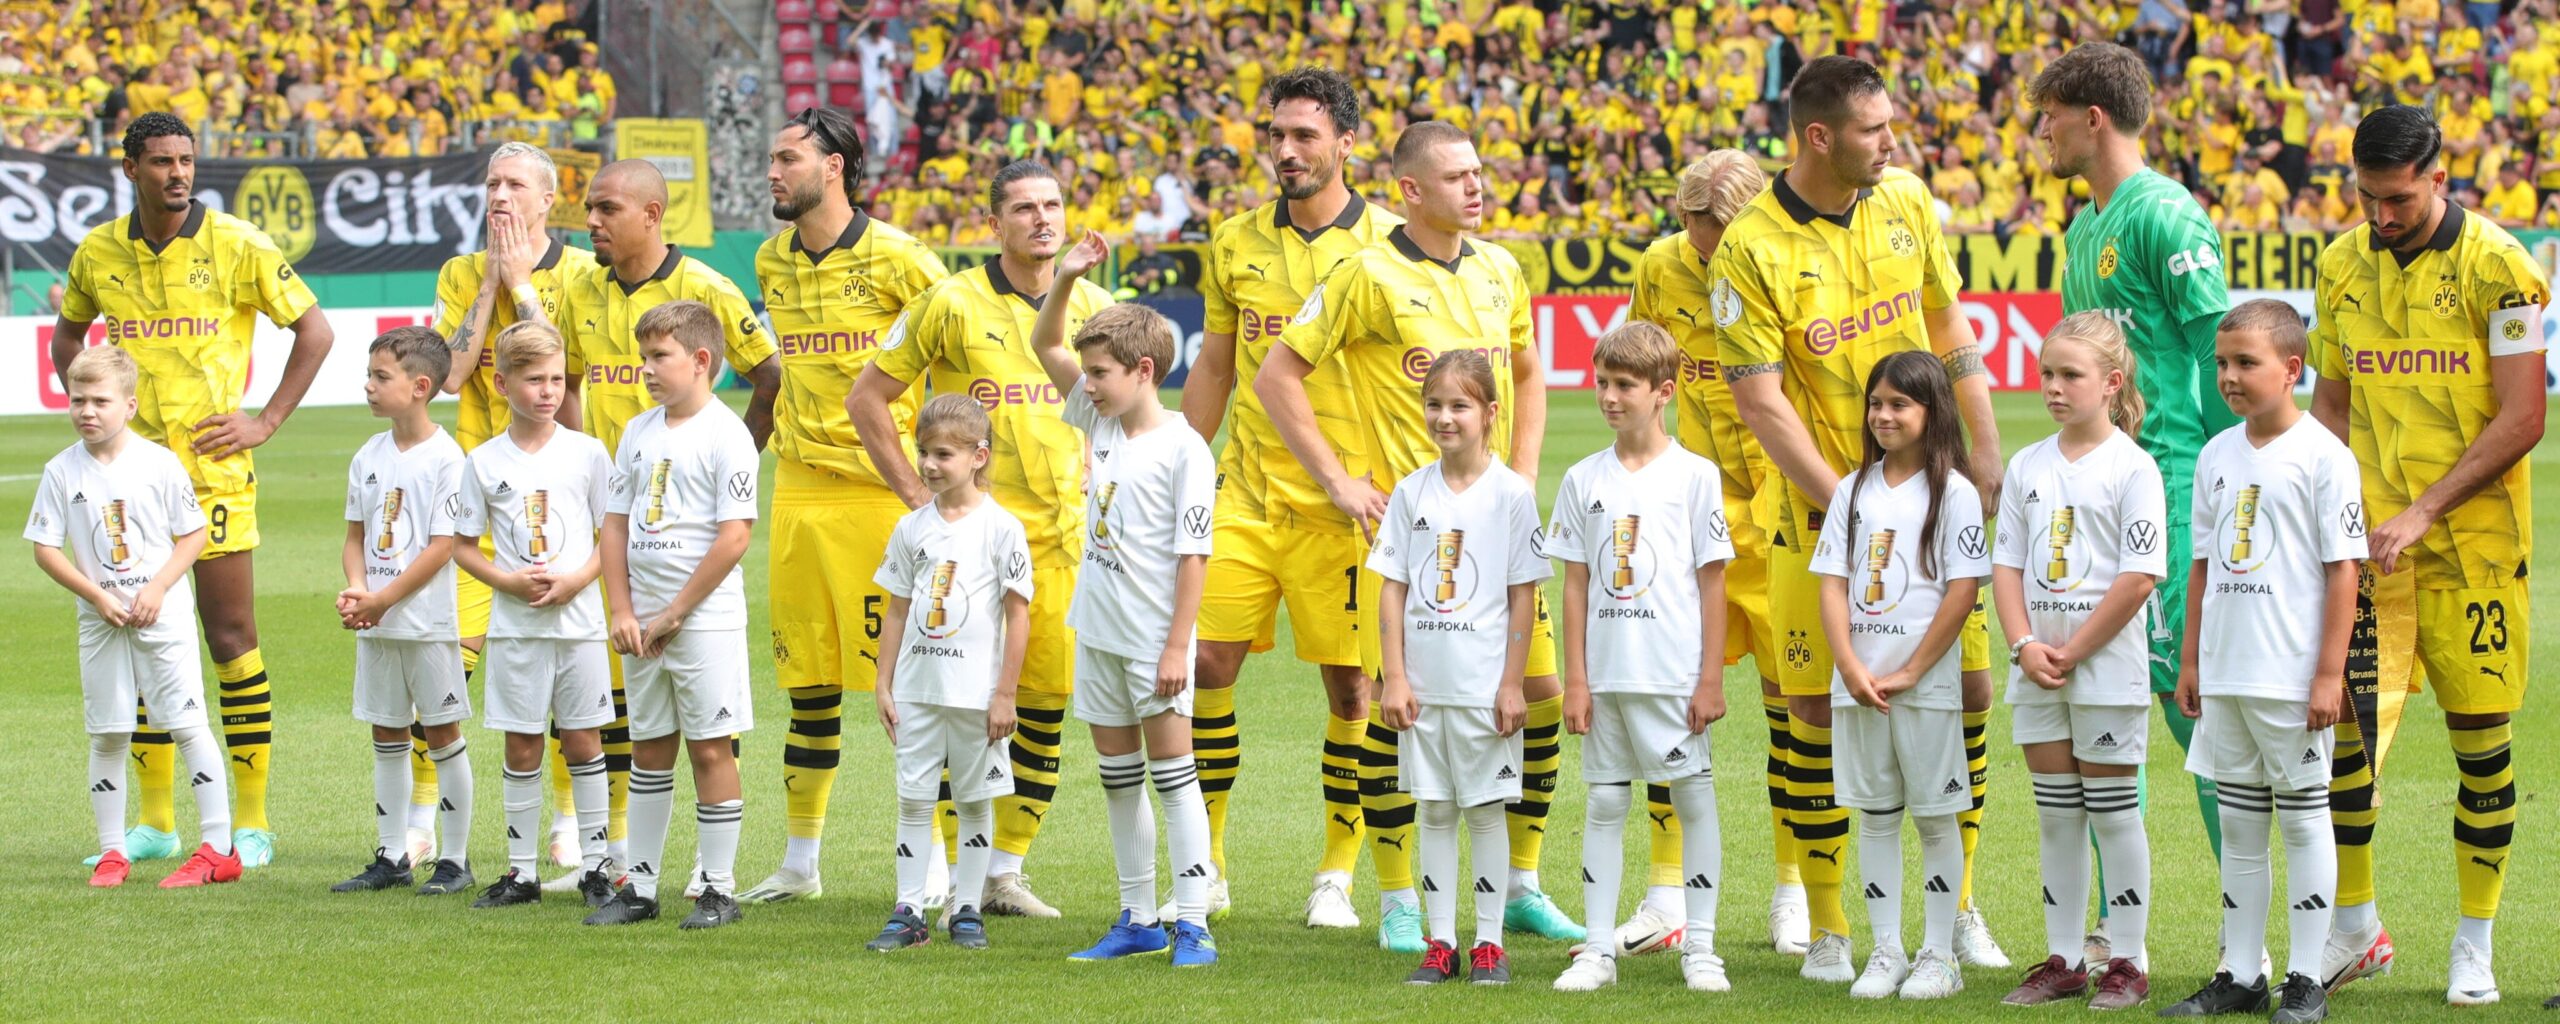 Finał Ligi Mistrzów. Borussia Dortmund ma argumenty, żeby wygrać z Realem Madryt